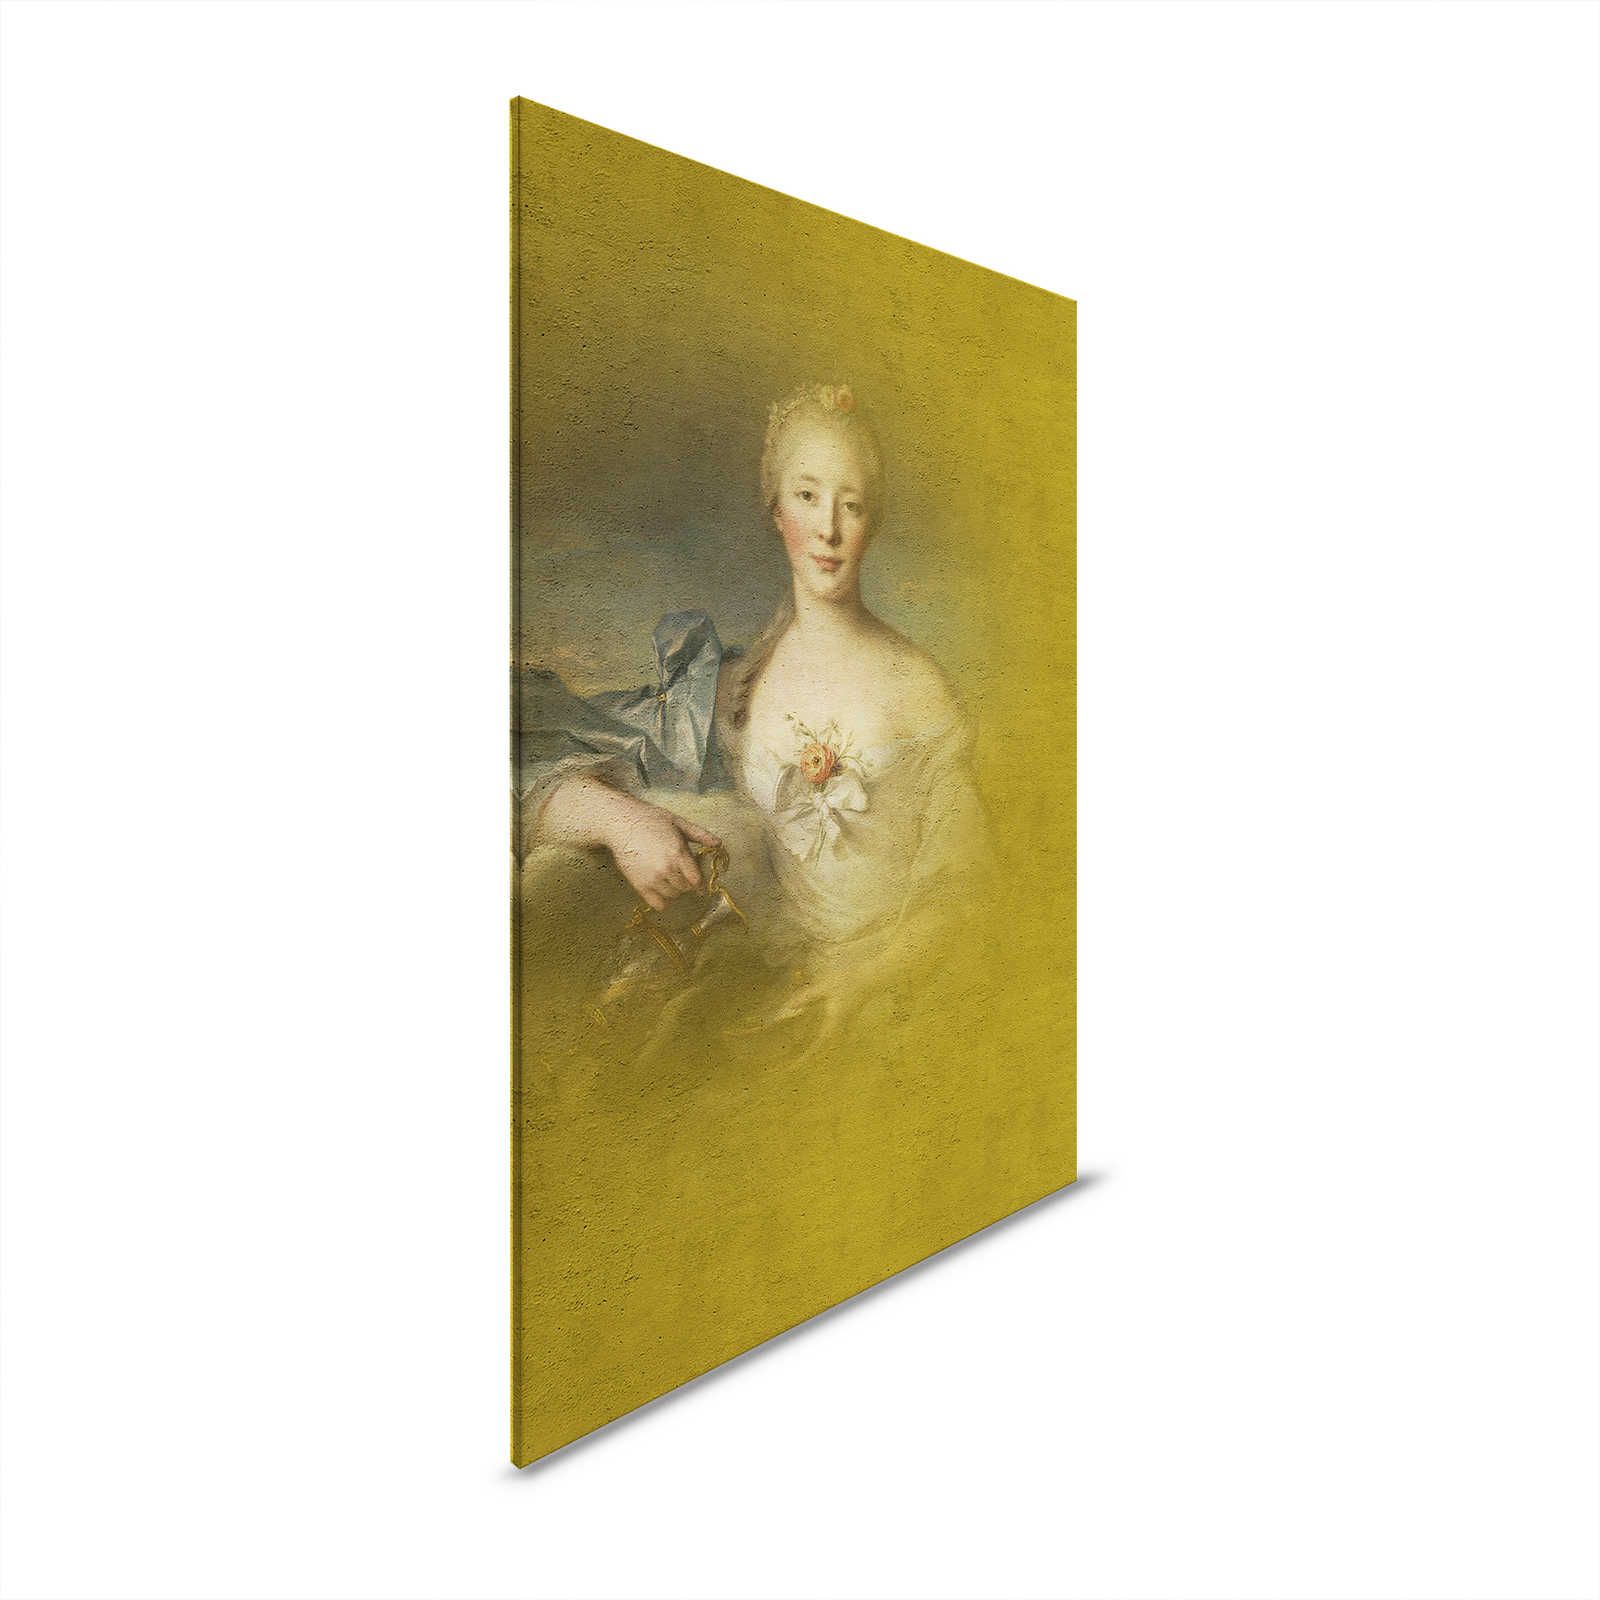 Leinwandbild klassisches Portrait junge Dame – 0,80 m x 1,20 m
